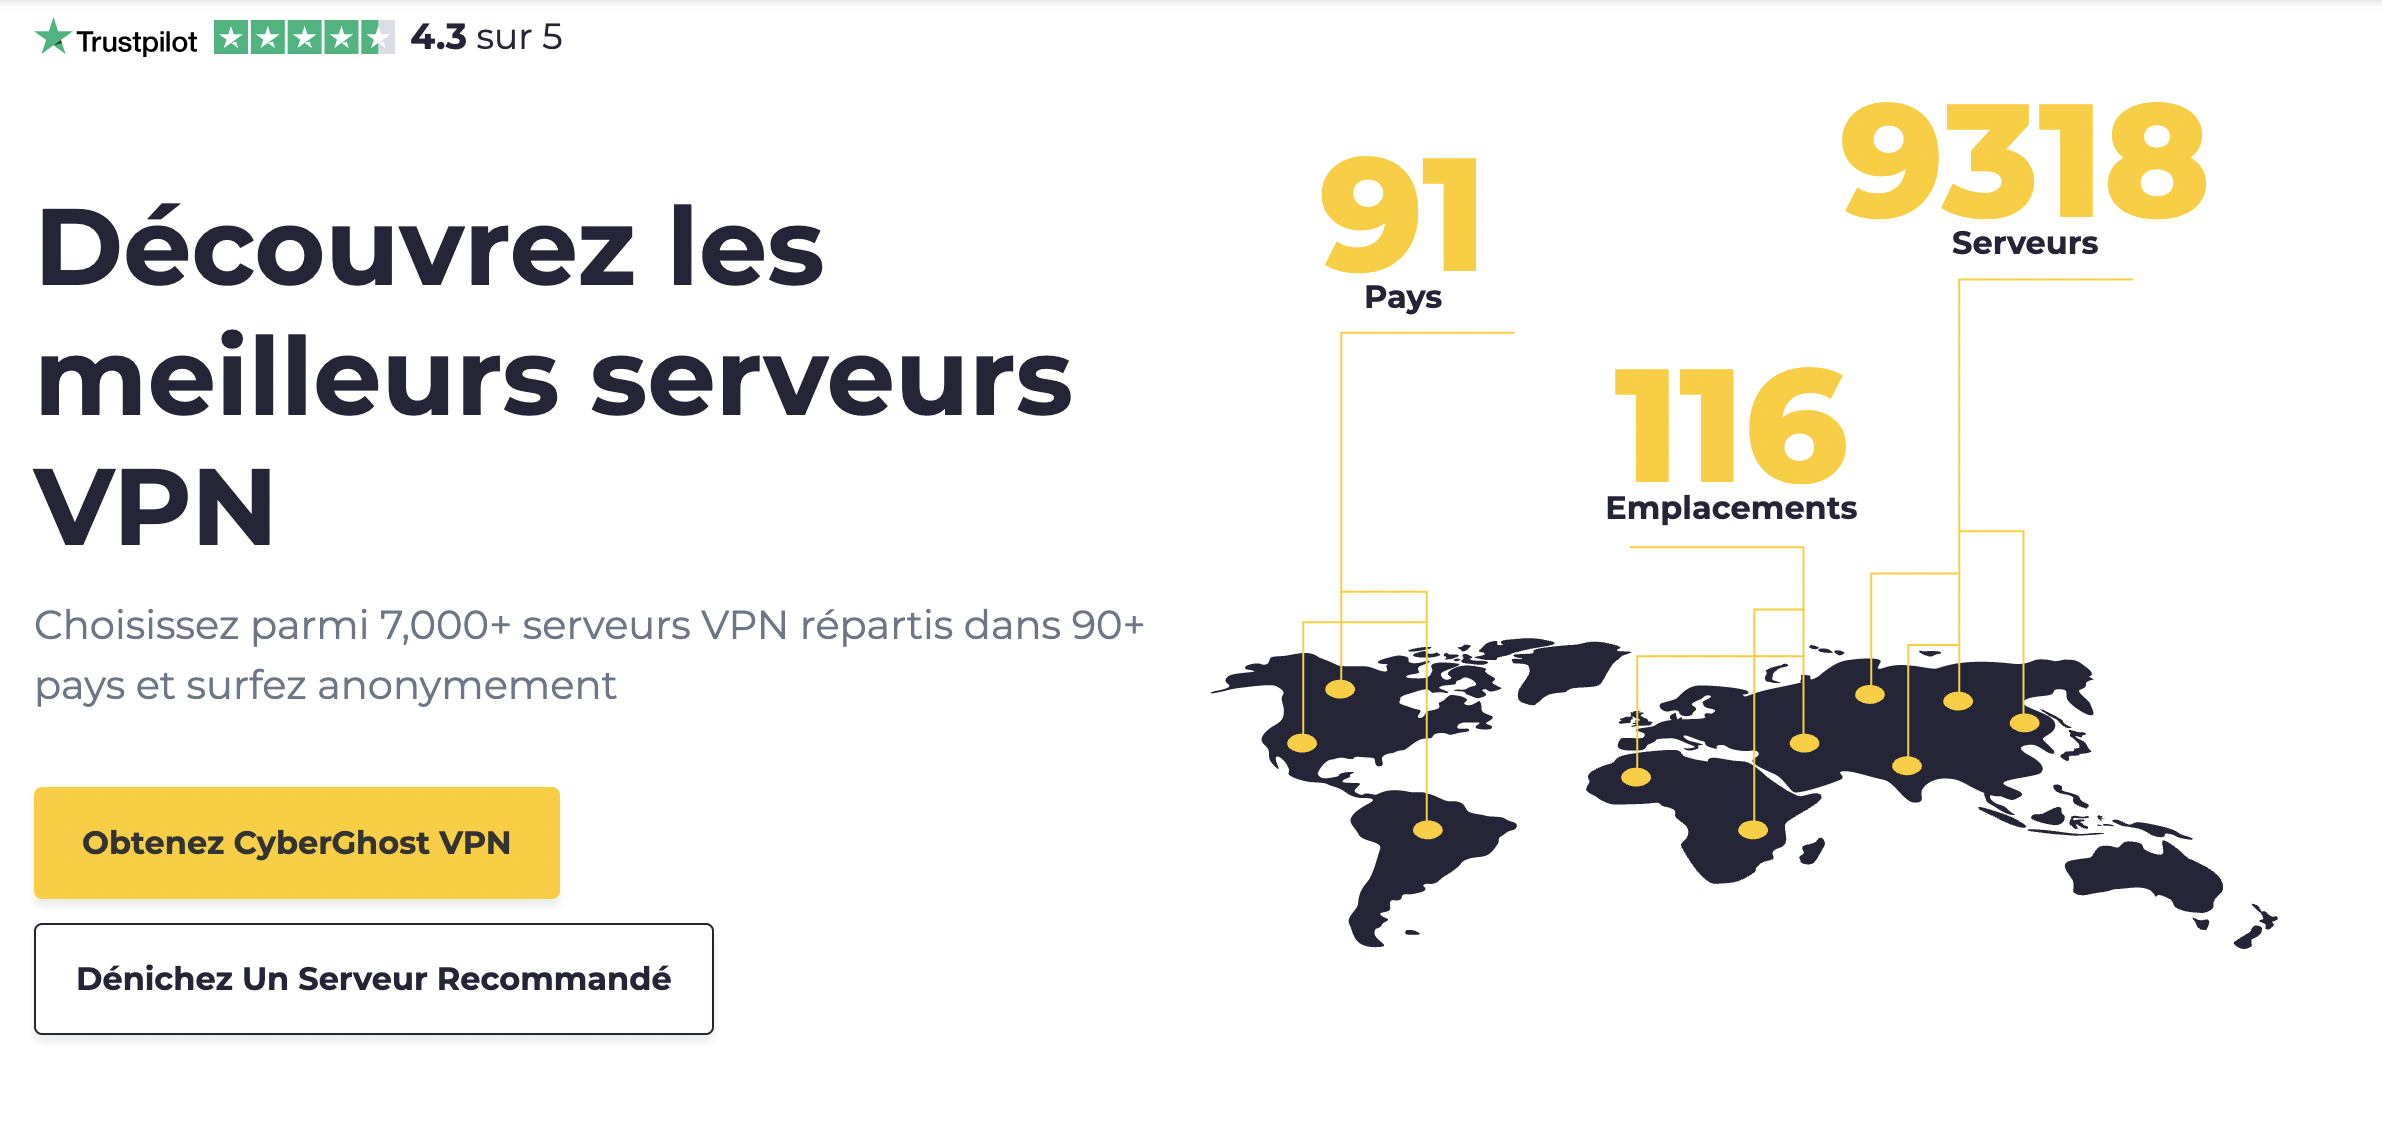 CyberGhost VPN : Les serveurs et leurs localisations